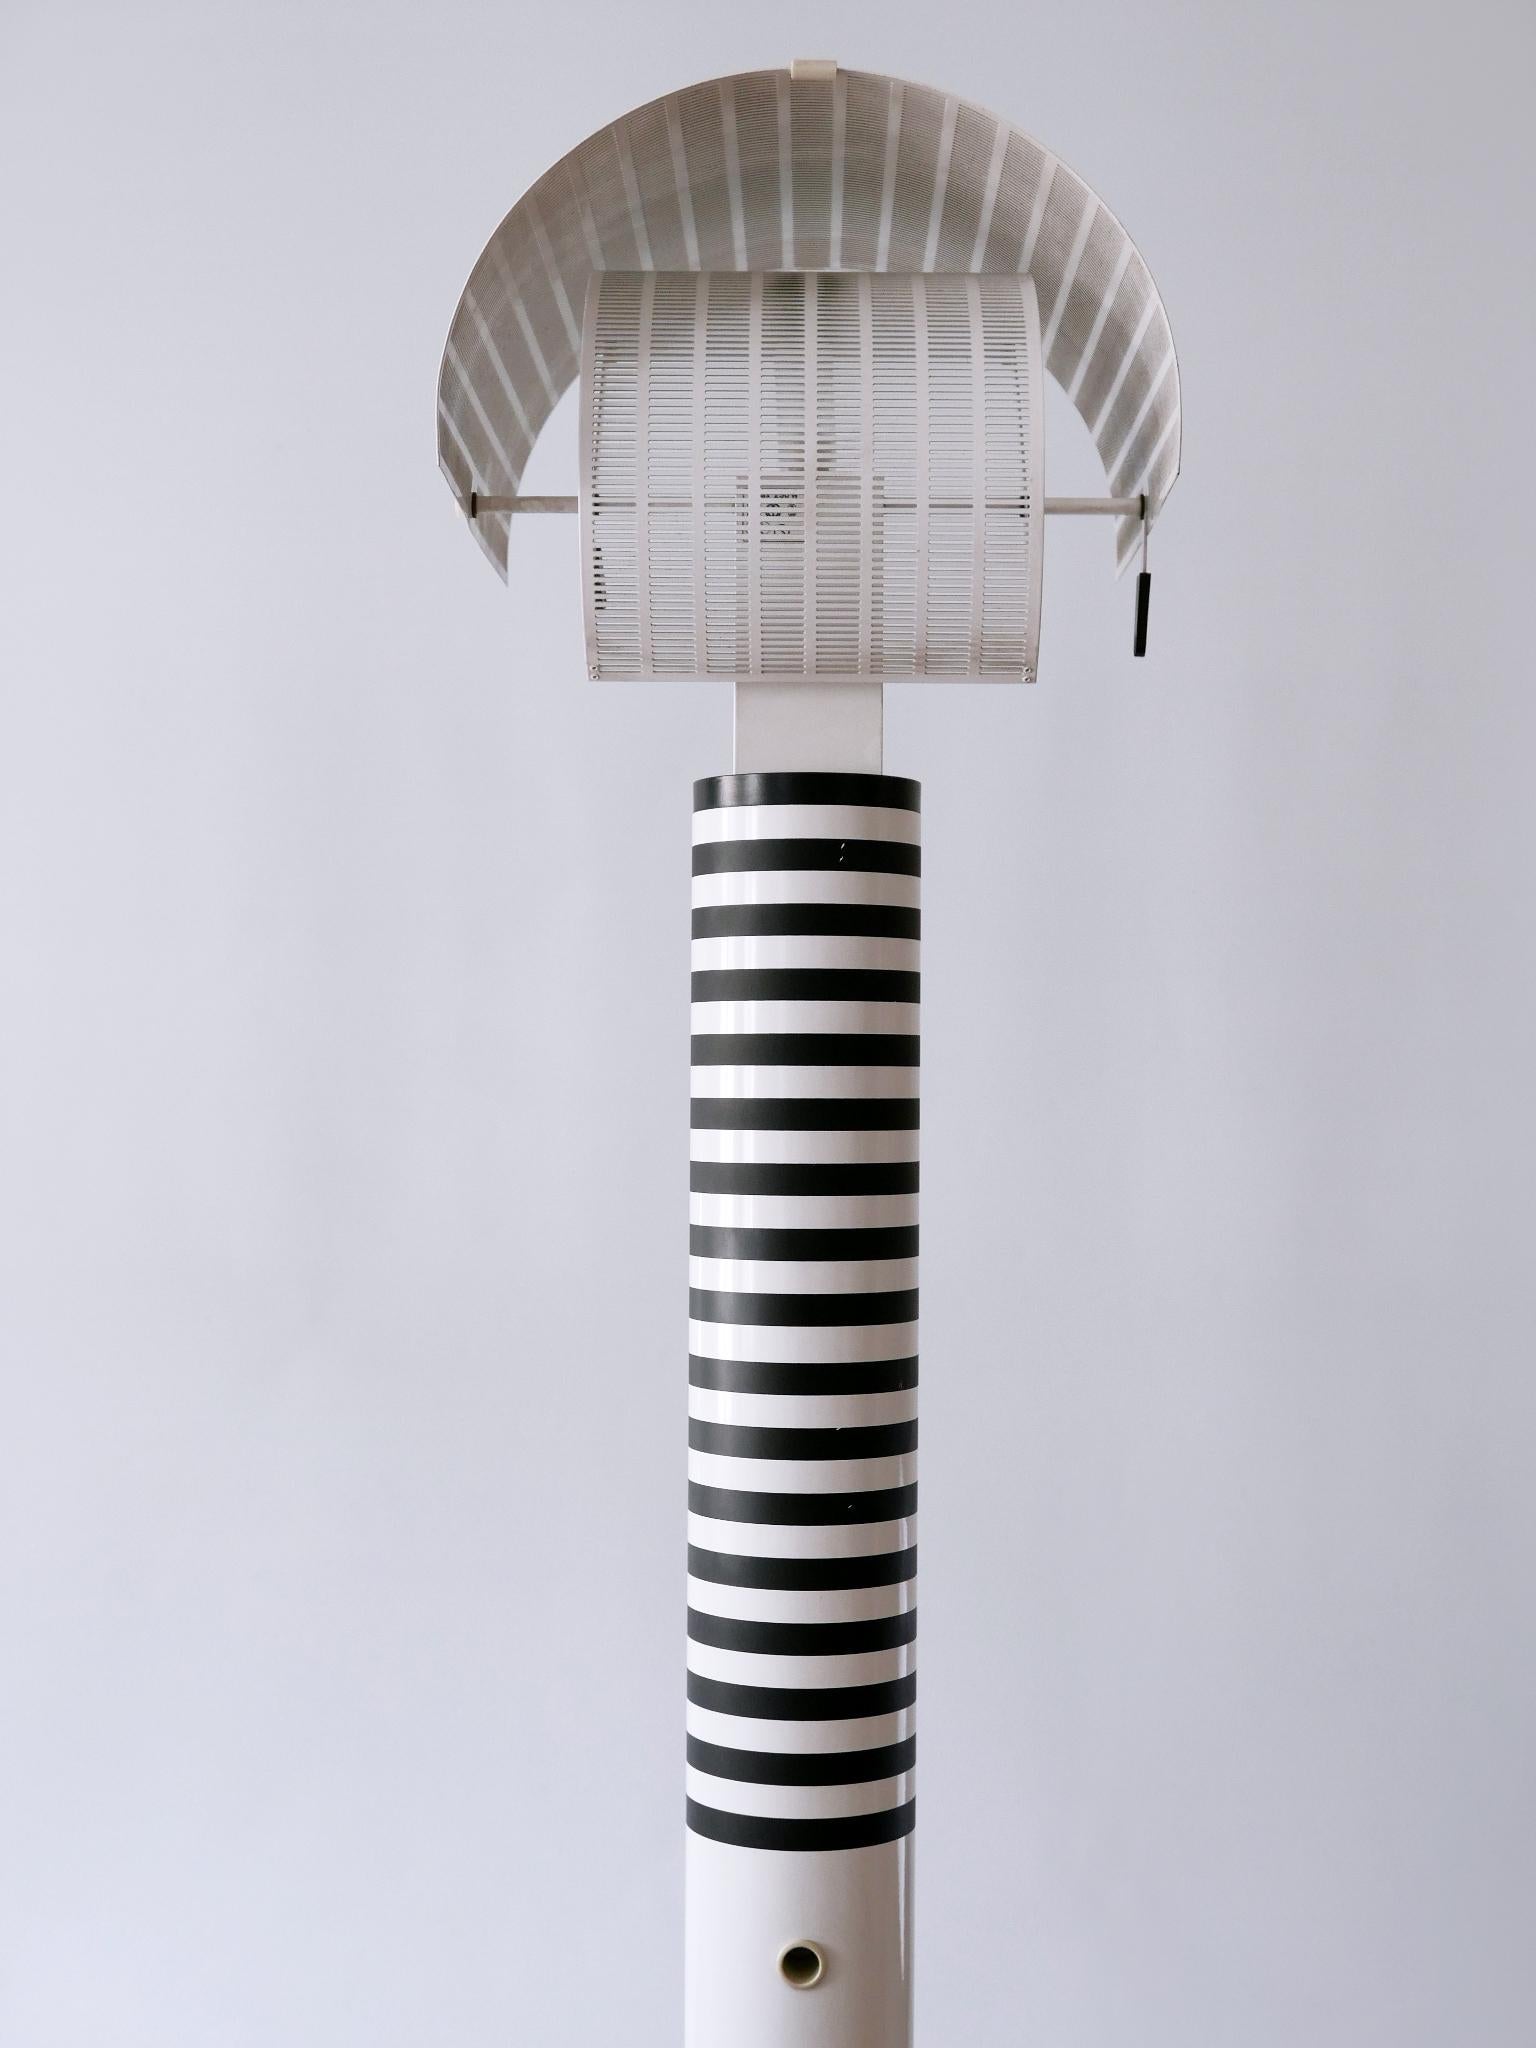 Monumental Postmodern Shogun Floor Lamp by Mario Botta for Artemide Italy 1980s For Sale 8